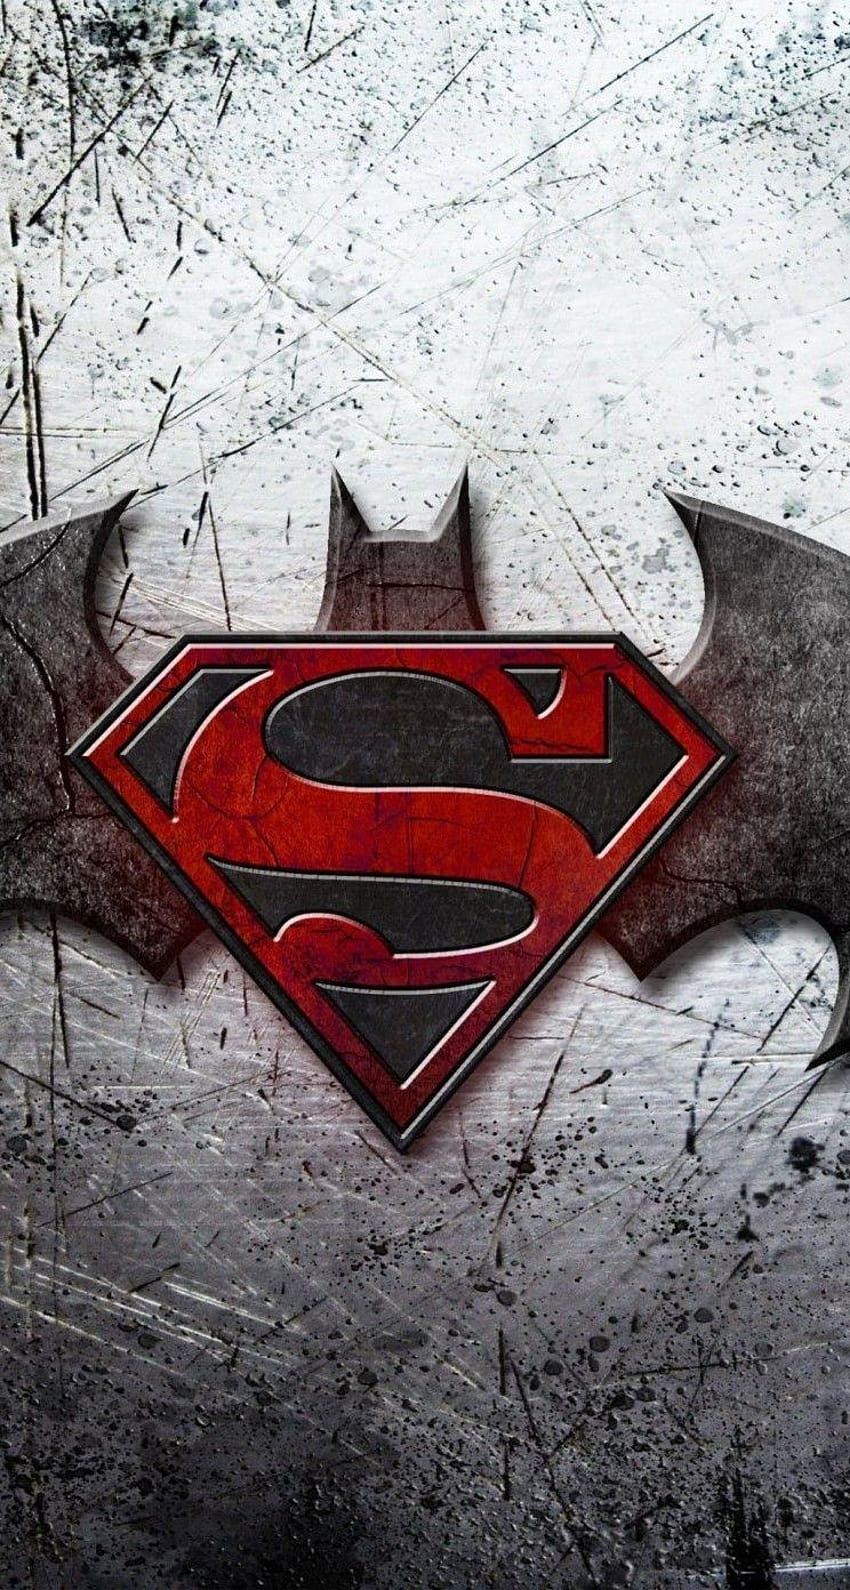 Batman VS Superman for iPhone 5 / 5s / 5c, batman superman logo HD phone  wallpaper | Pxfuel